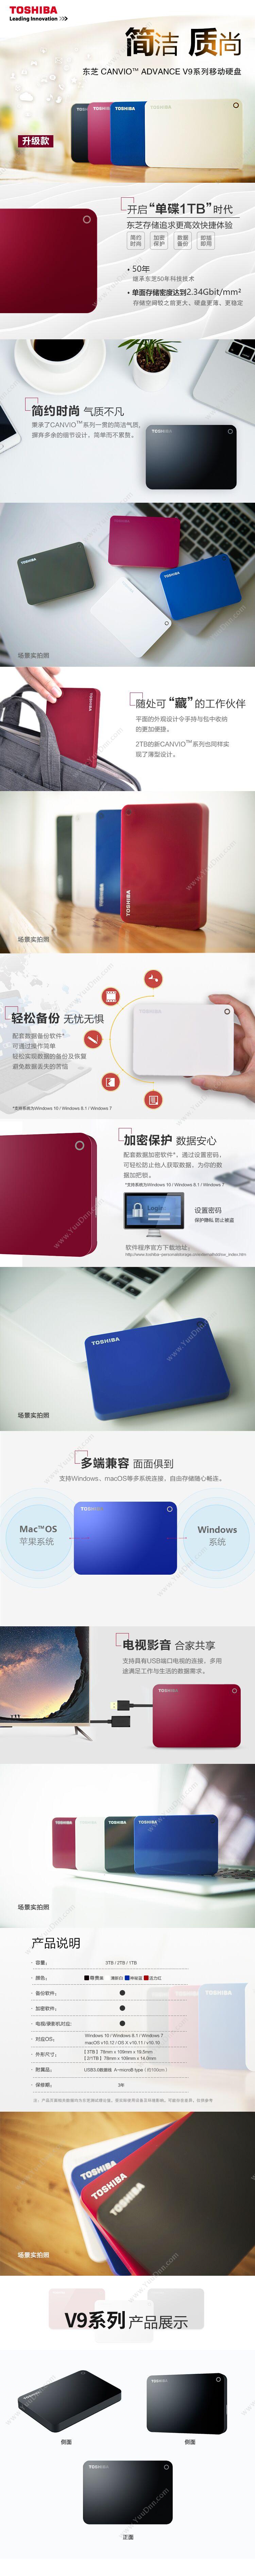 东芝 Toshiba CANVIO ADVANCE 2.5寸 2TB USB3（白） 移动硬盘